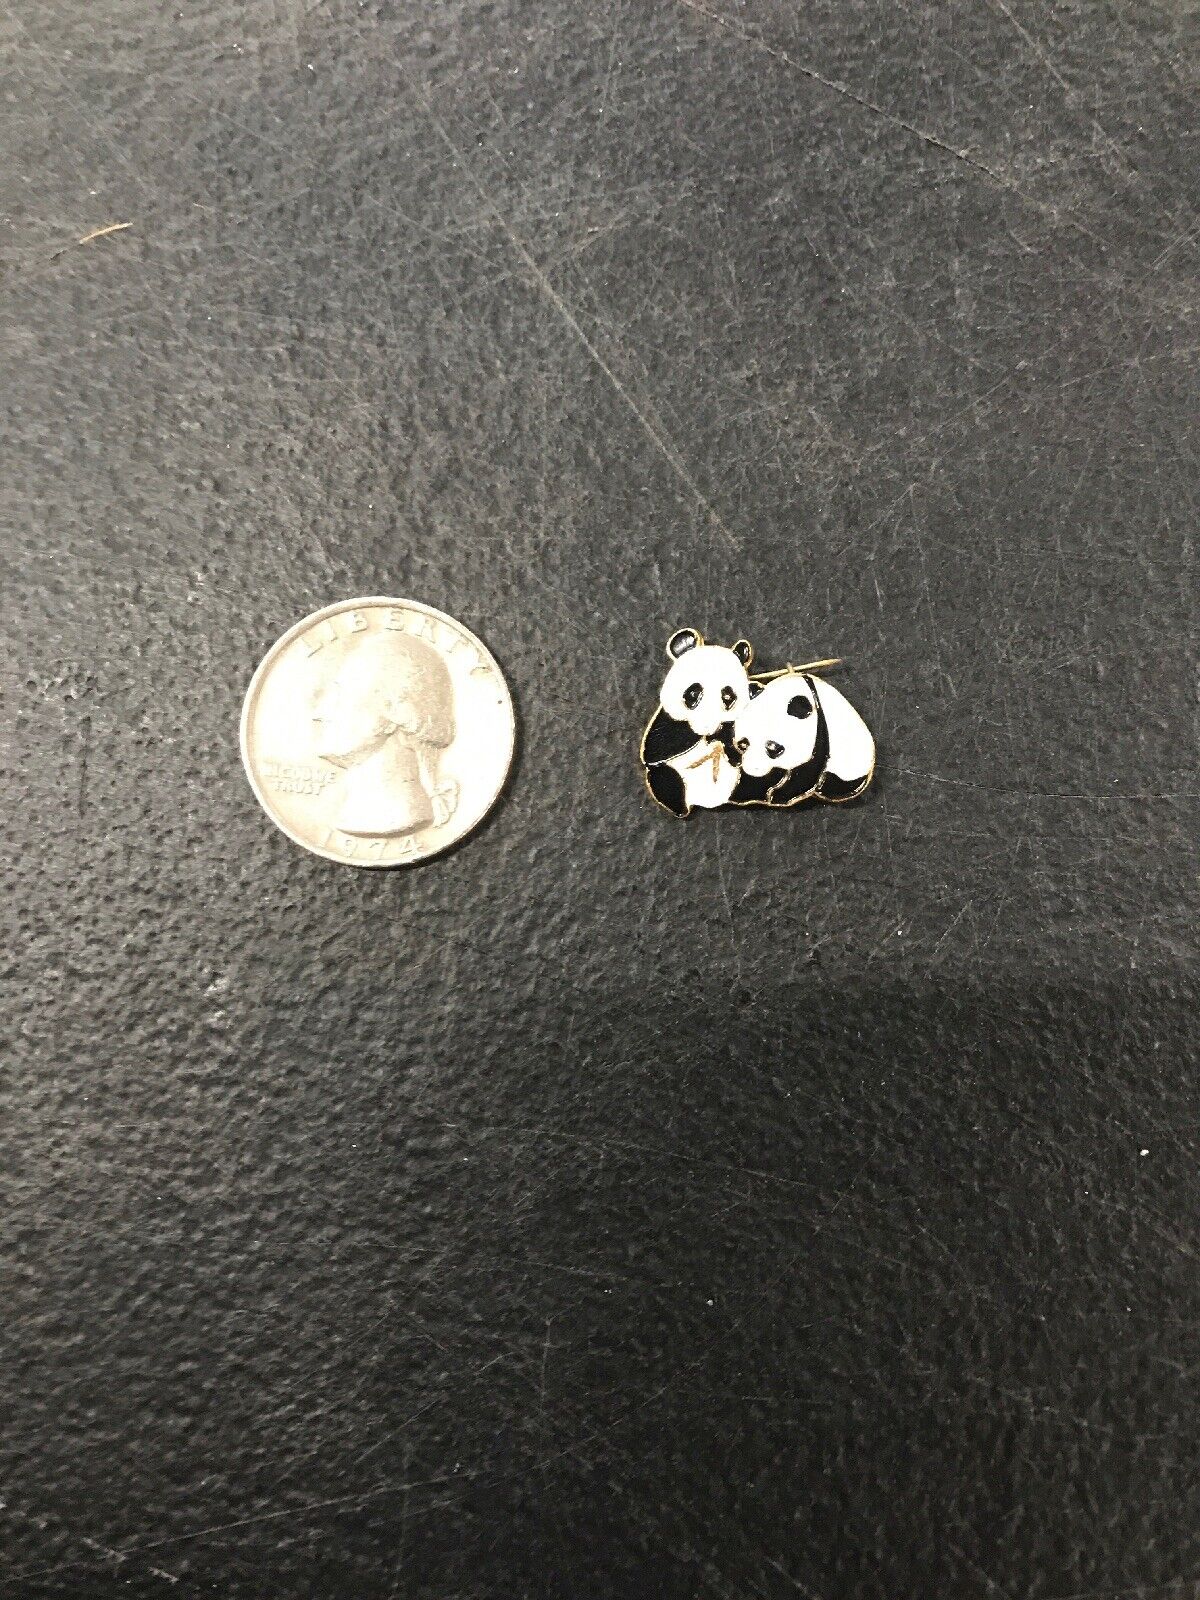 Two Pandas Pin